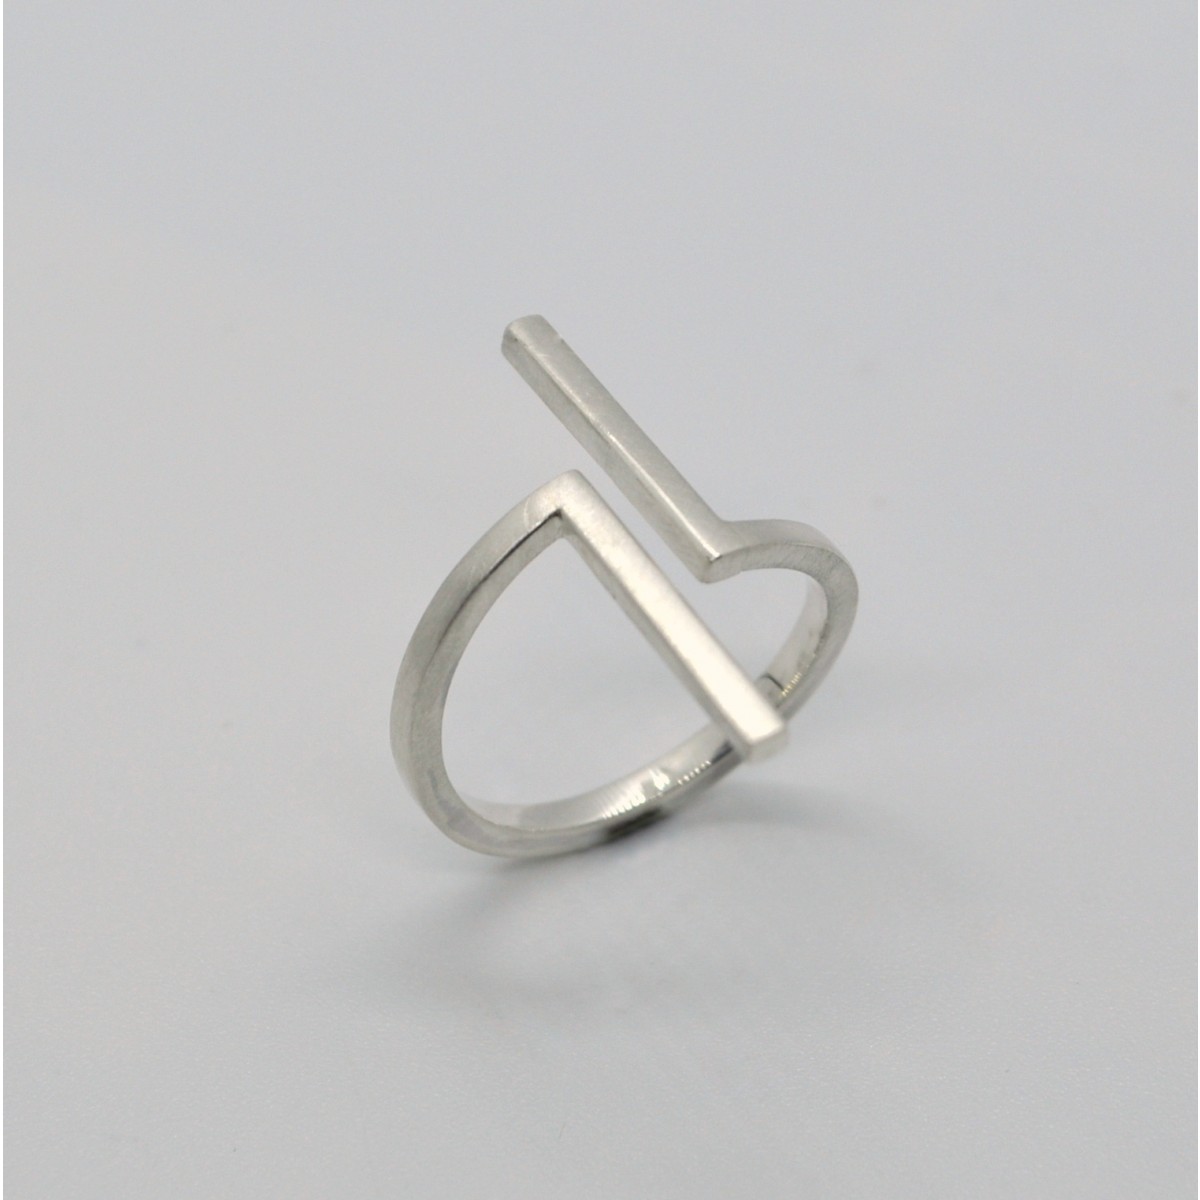 Ring "Verschoben" aus 925/- Silber von DOPPELLUDWIG